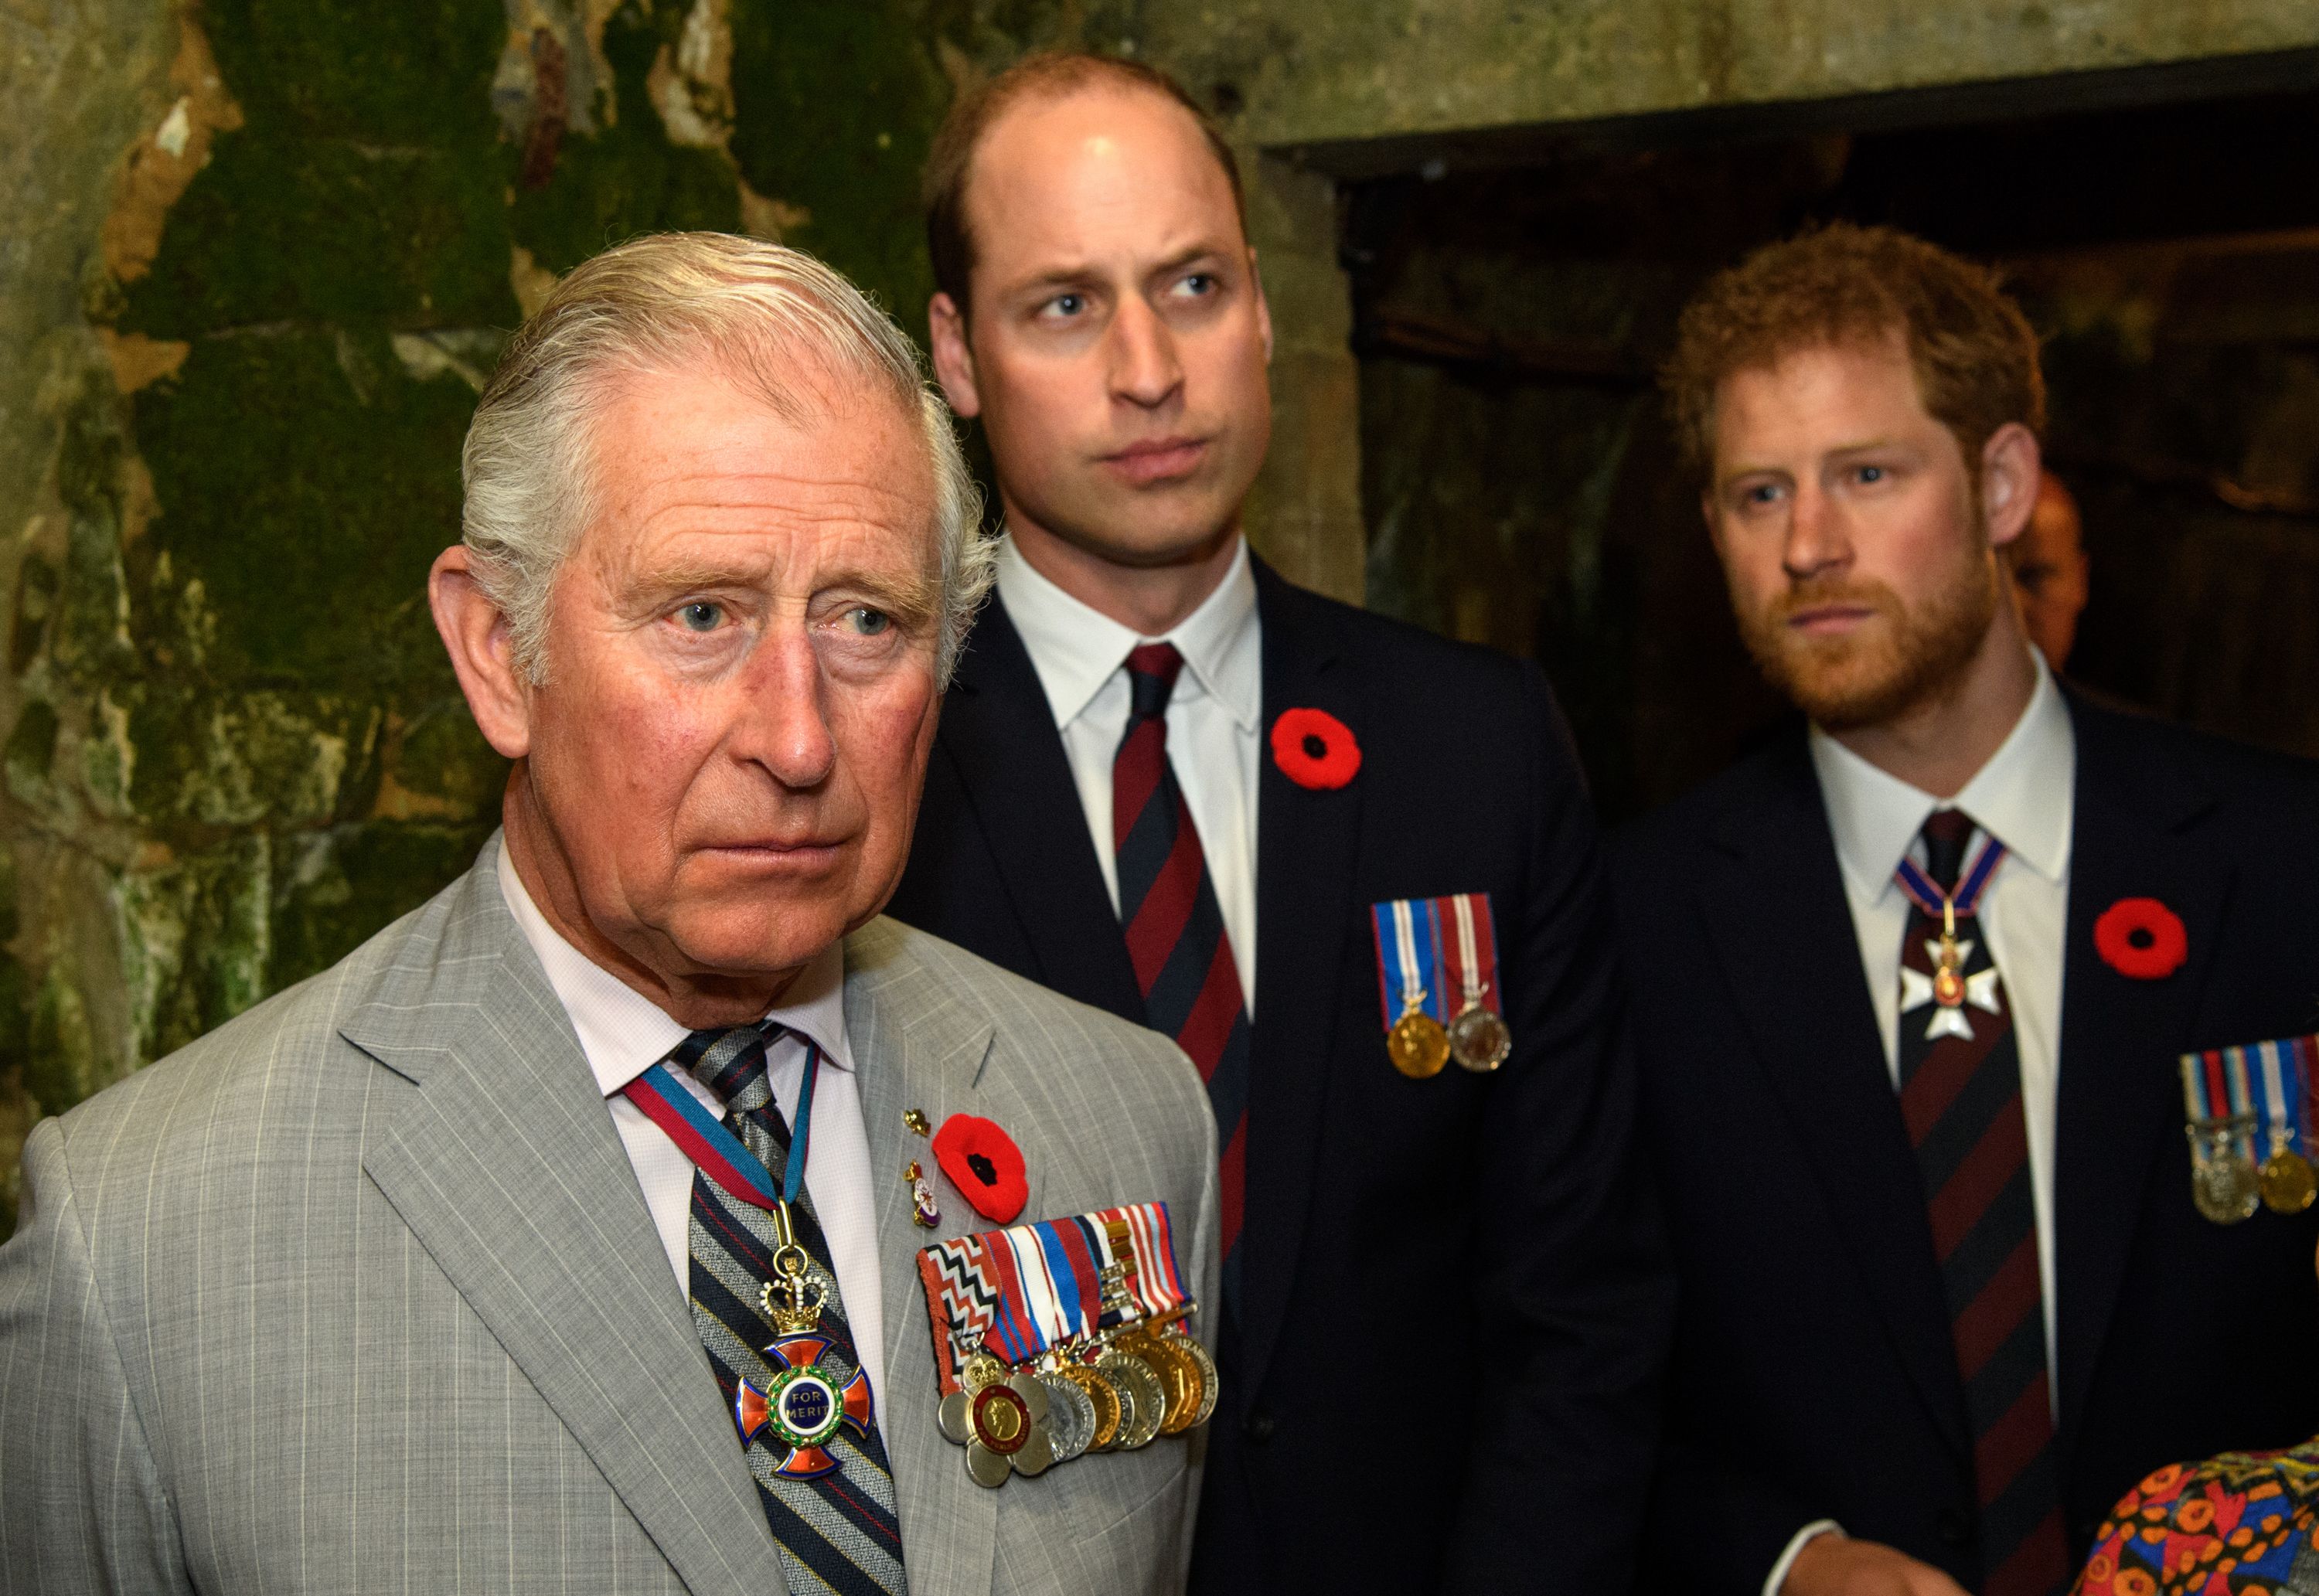 El príncipe Carlos, el príncipe Guillermo y el príncipe Harry durante las conmemoraciones del centenario de la batalla de Vimy Ridge el 9 de abril de 2017 | Foto: Getty Images